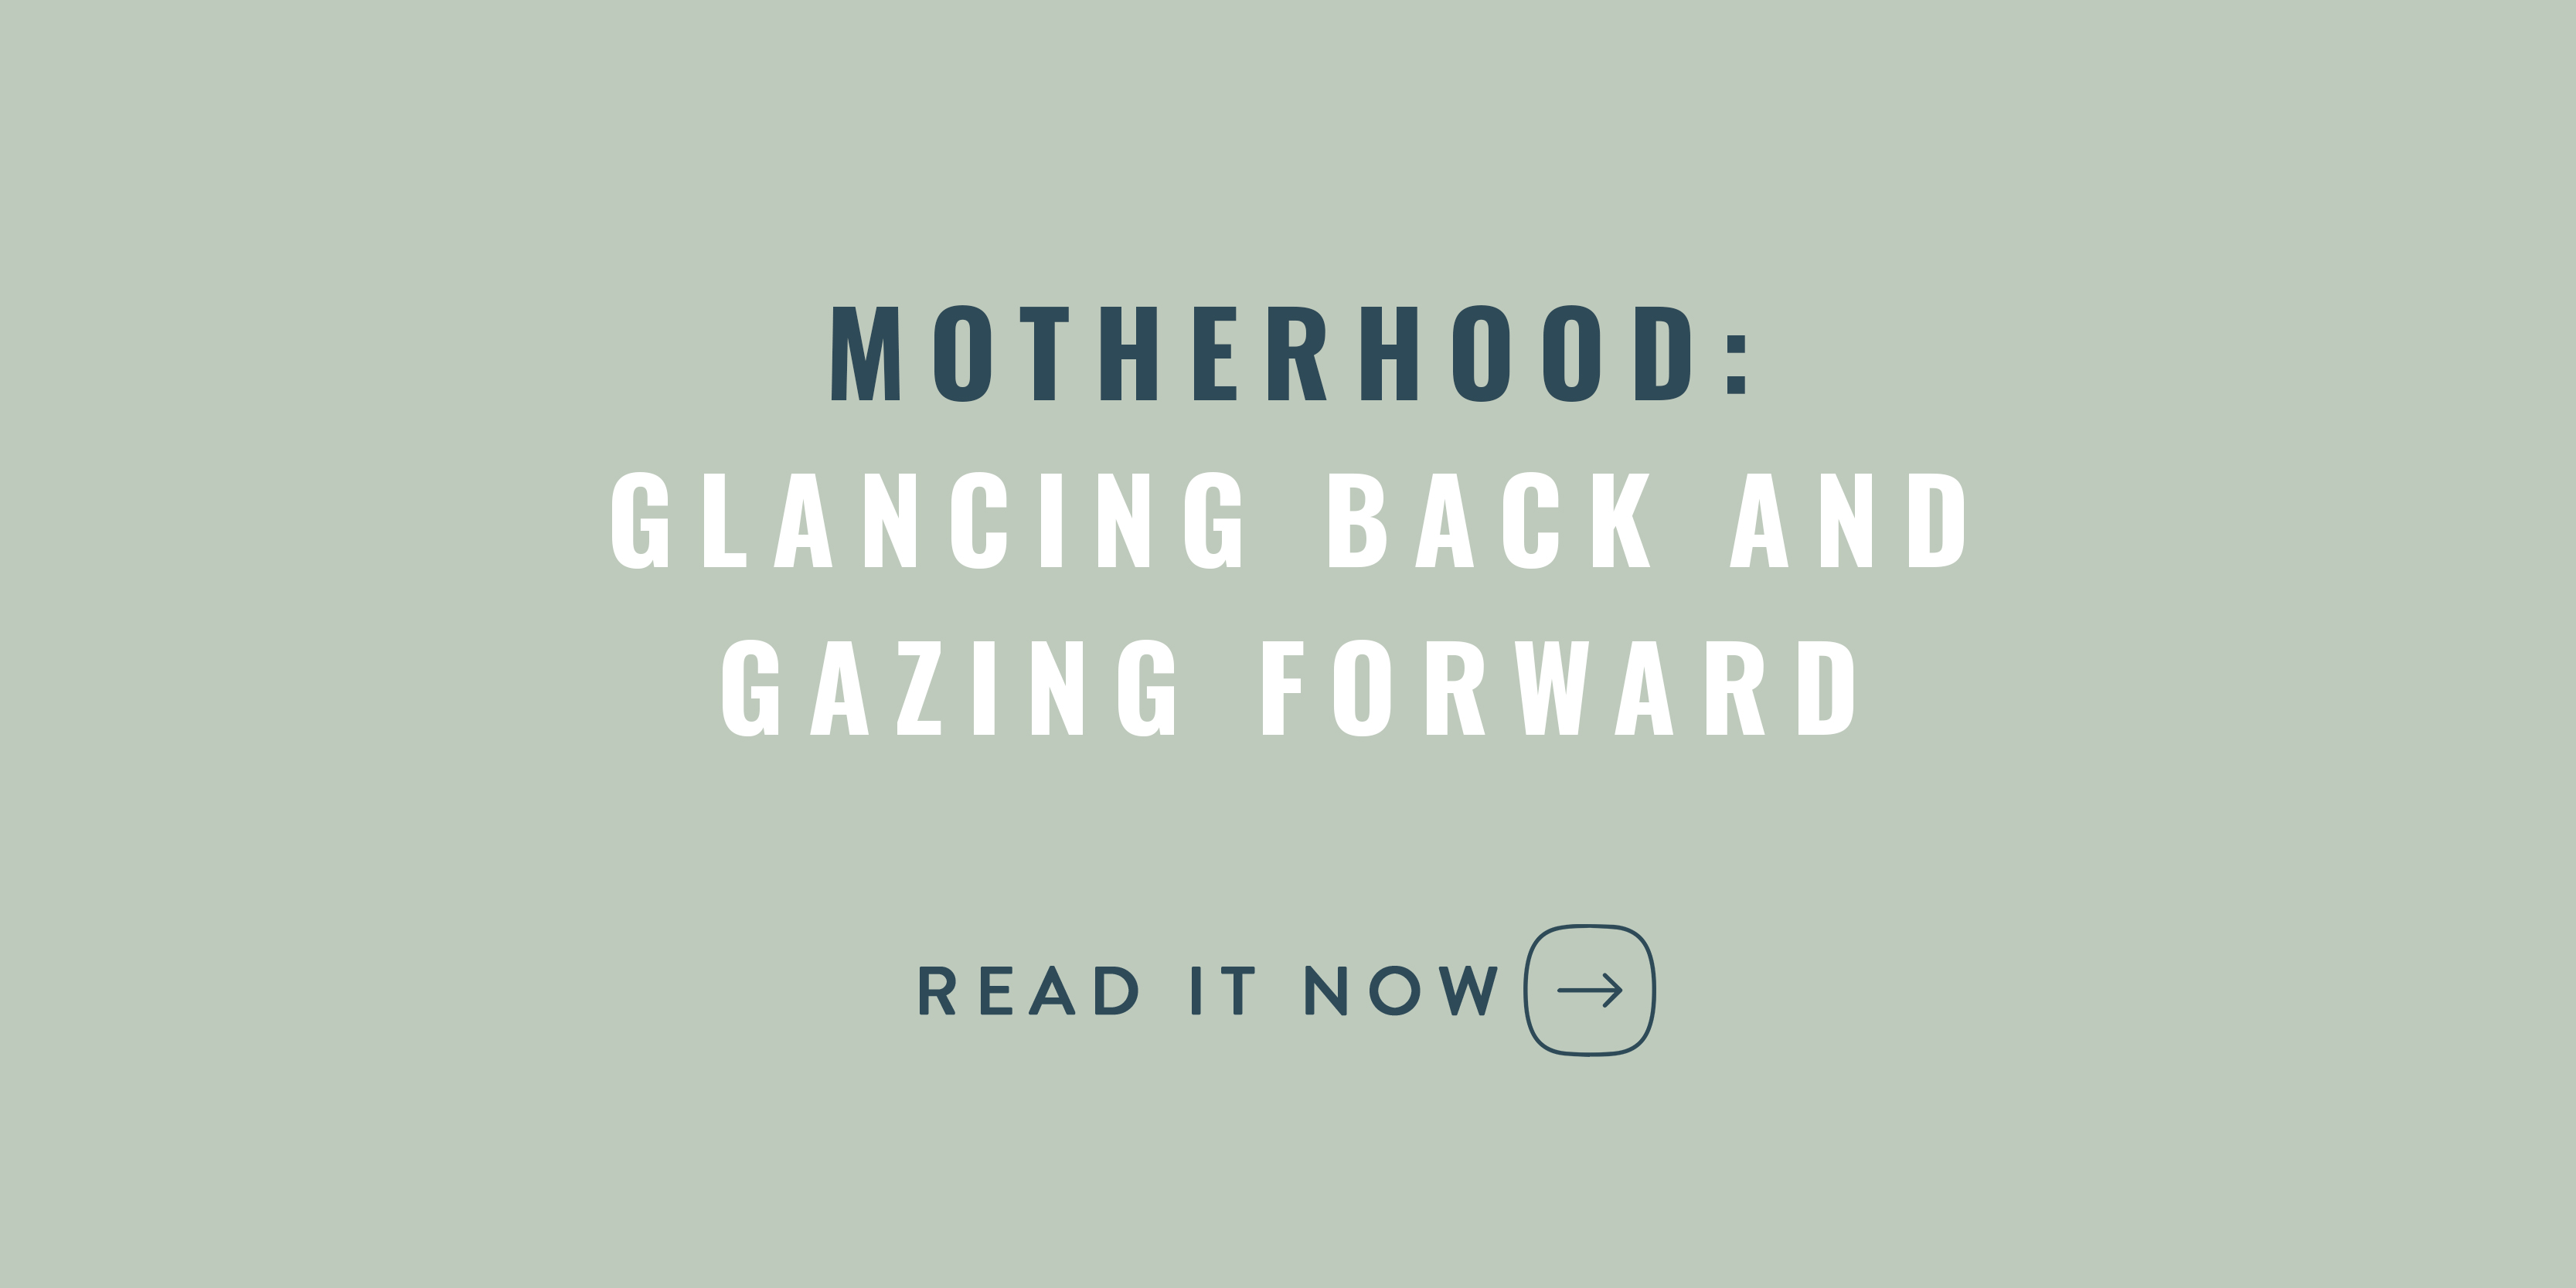 Motherhood Gazing Glancing